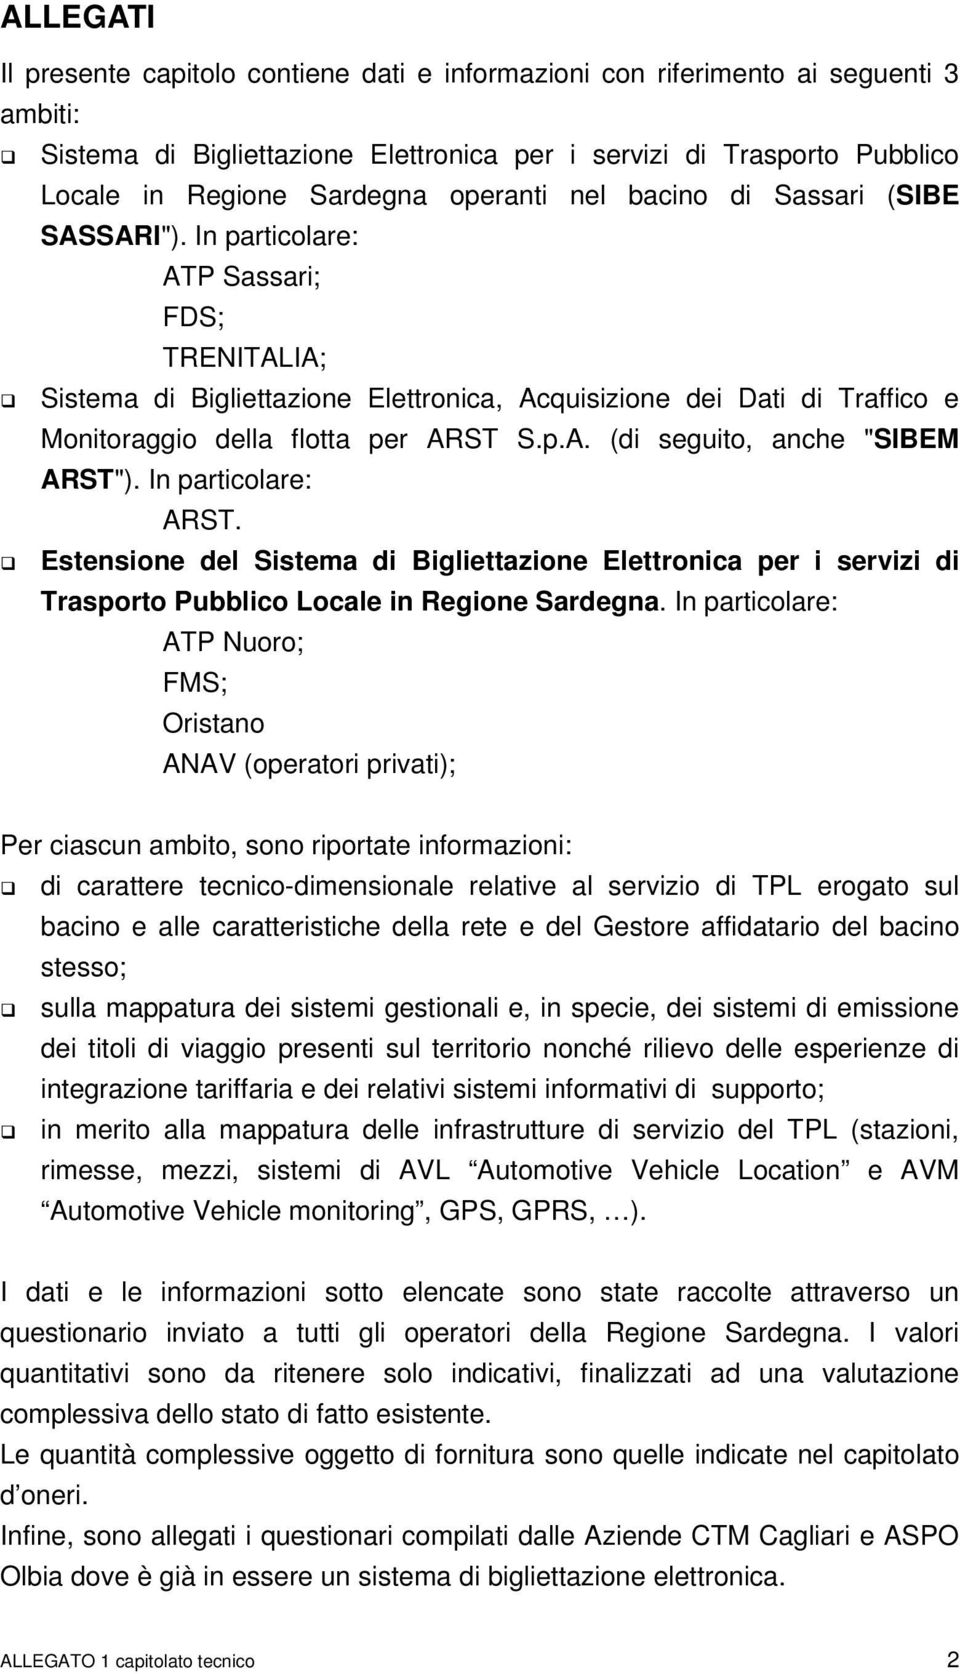 In particolare: ATP Sassari; FDS; TRENITALIA; Sistema di Bigliettazione Elettronica, Acquisizione dei Dati di Traffico e Monitoraggio della flotta per ARST S.p.A. (di seguito, anche "SIBEM ARST").